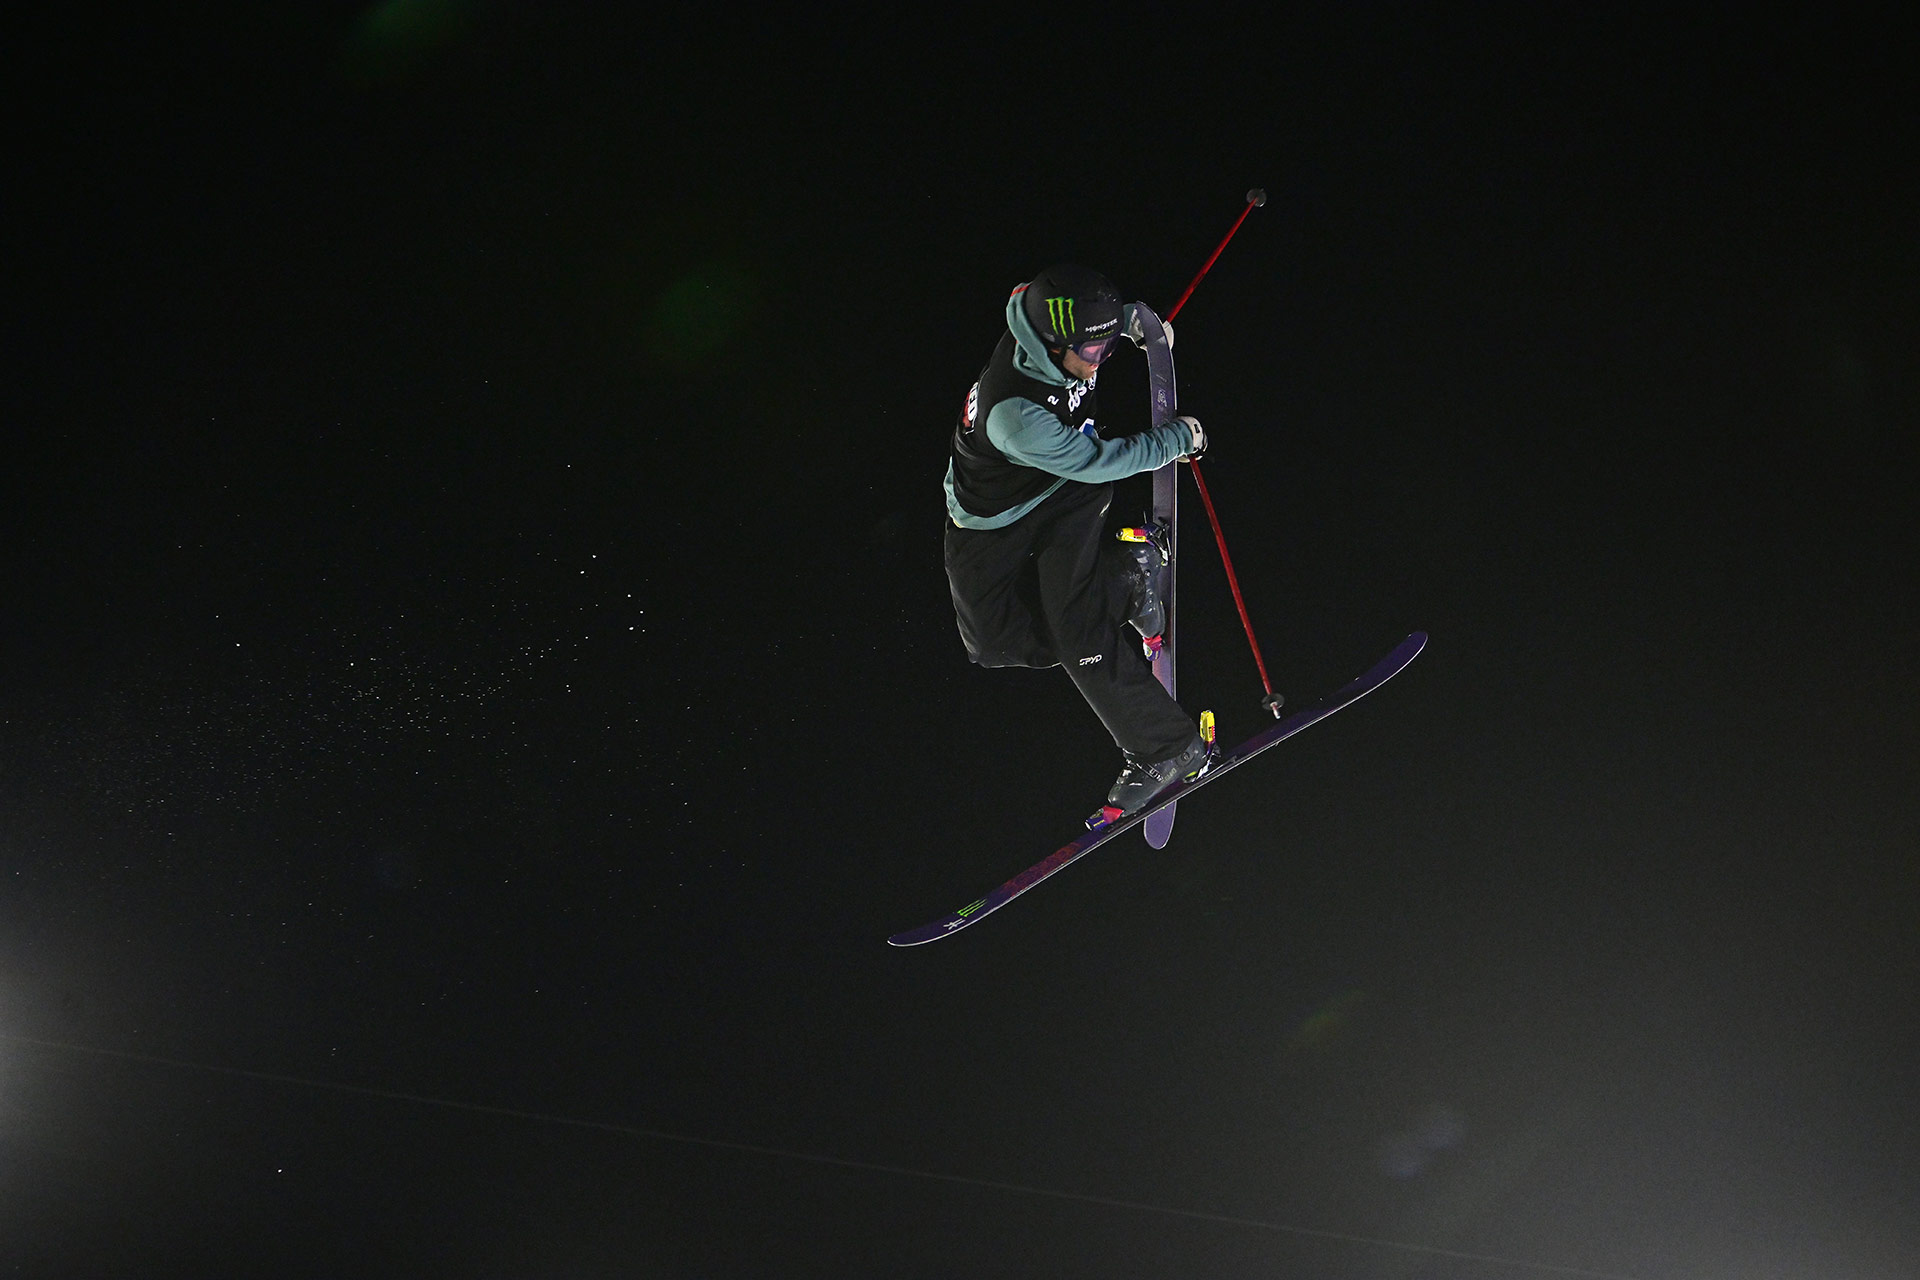 Alex Hall competes at the 2022 X Games Mens Ski Big Air